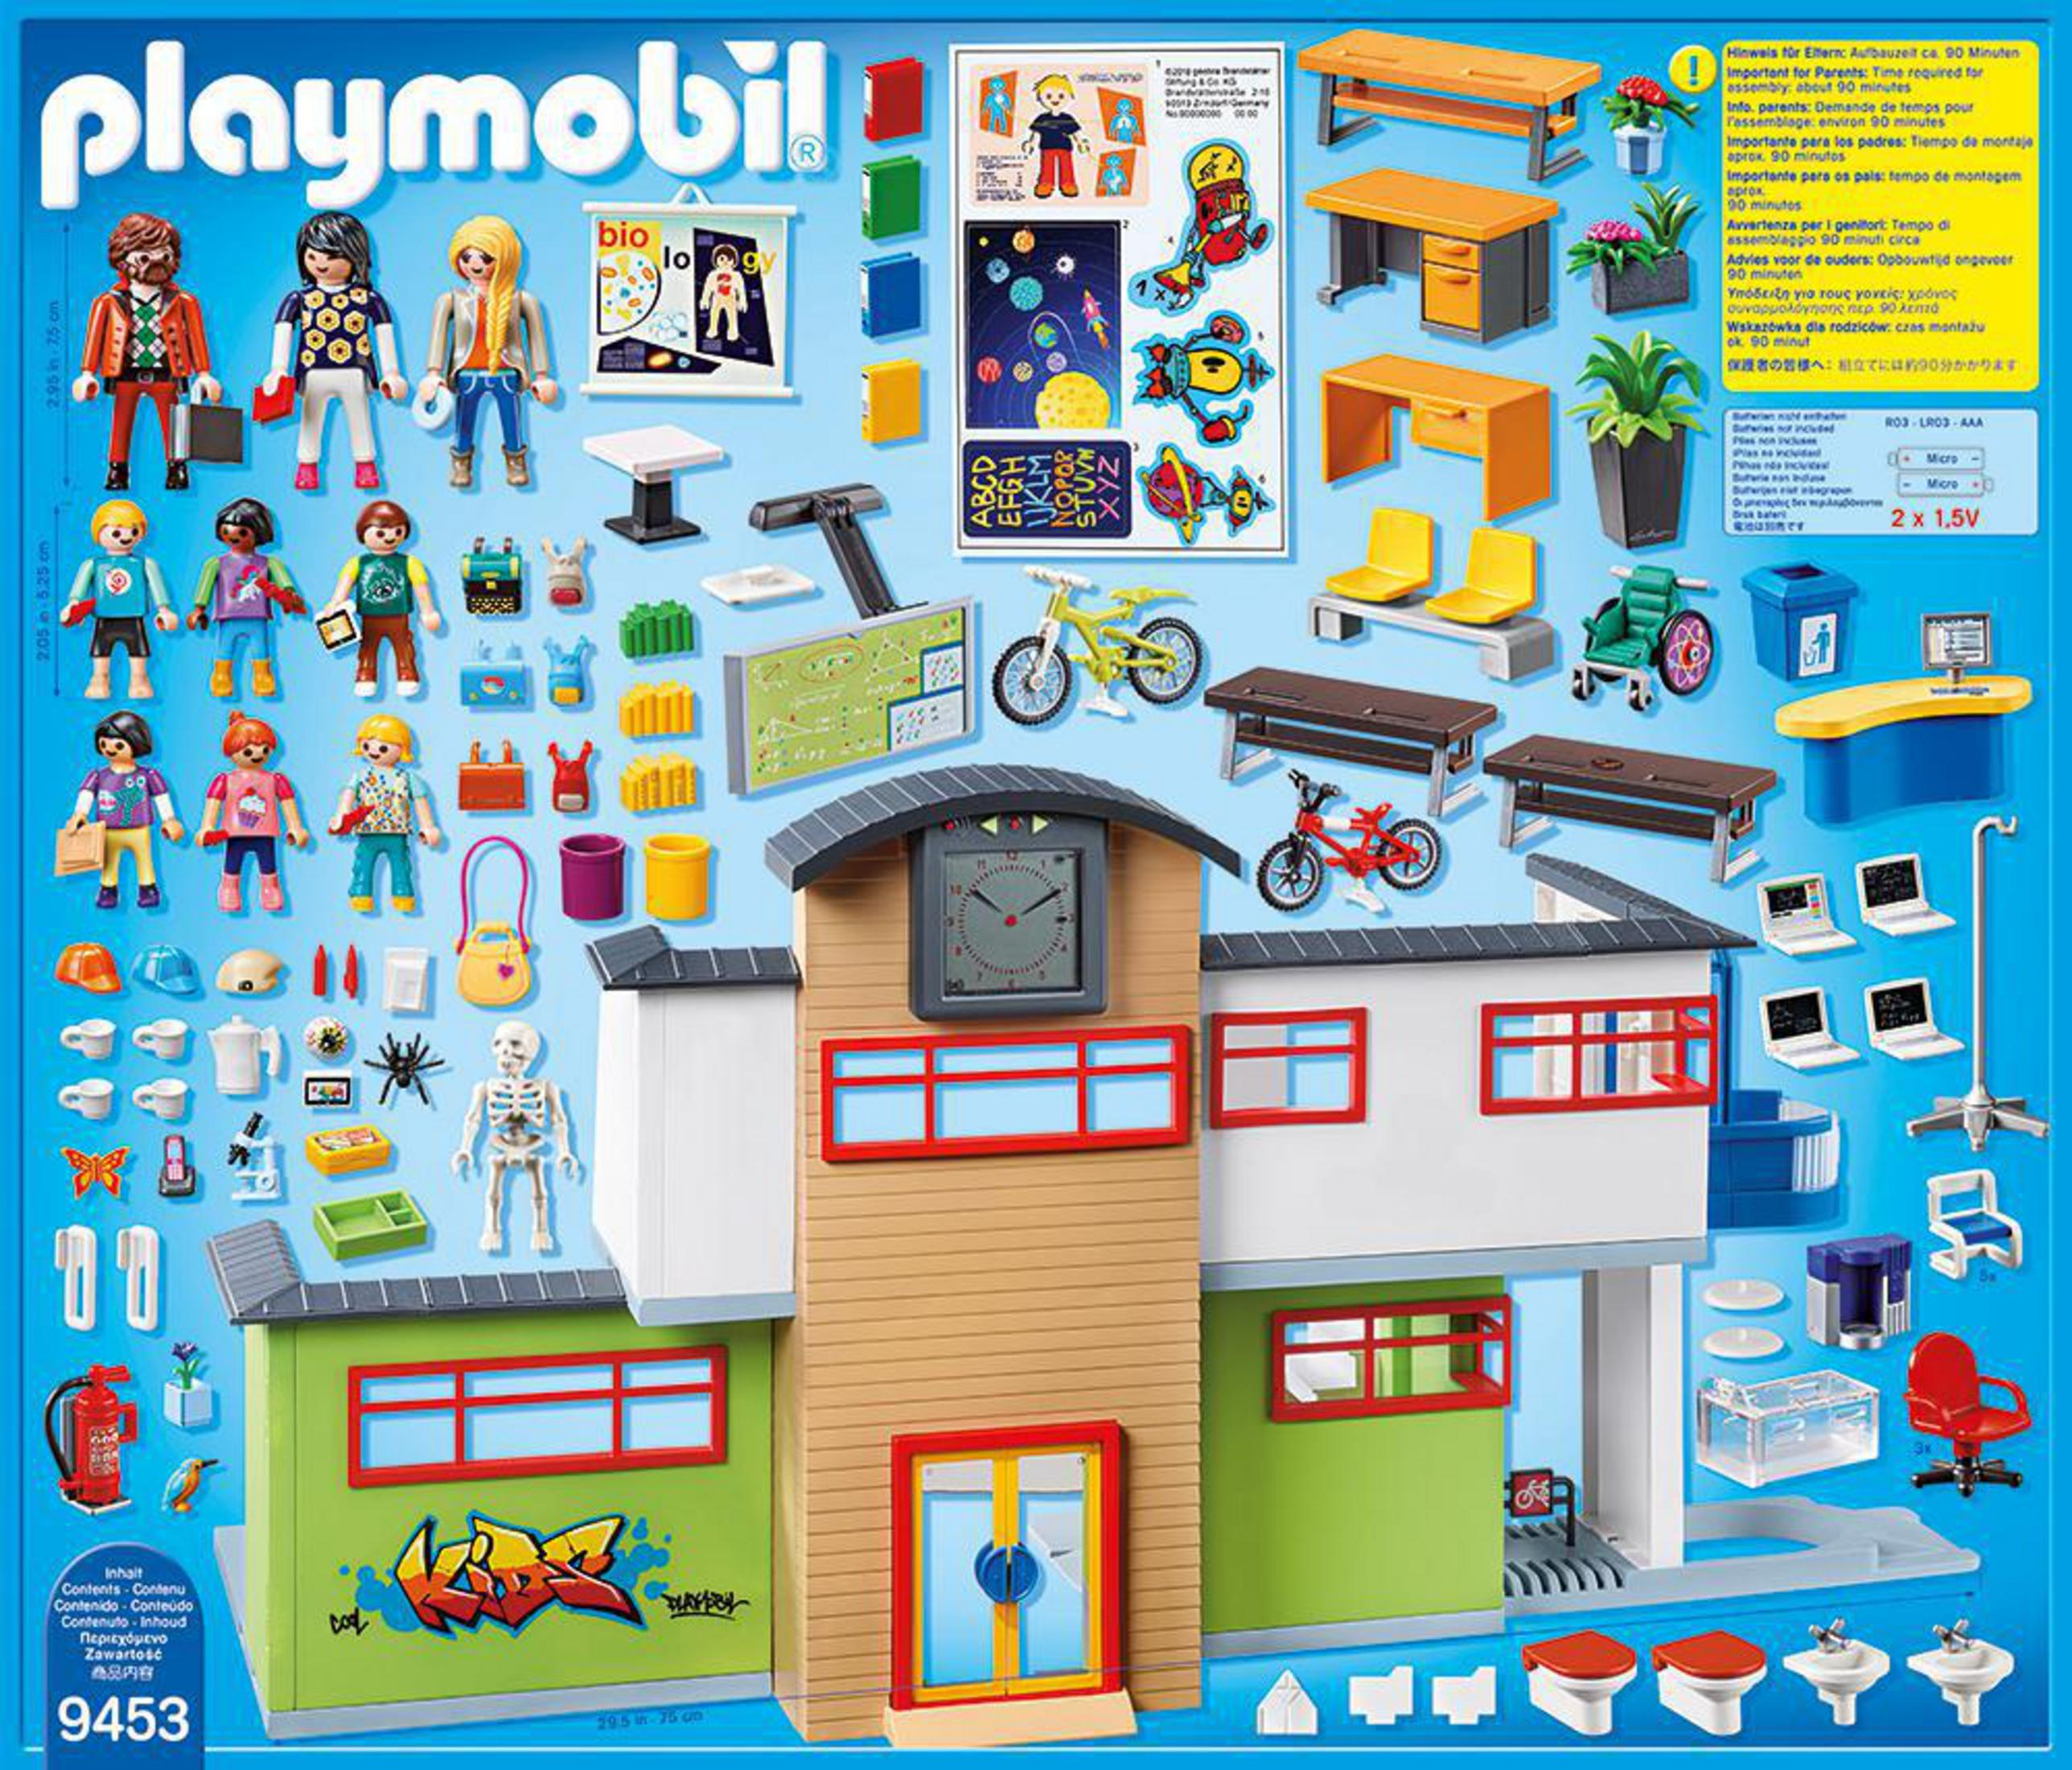 PLAYMOBIL Colegio City 9453 Spielzeugsets Life